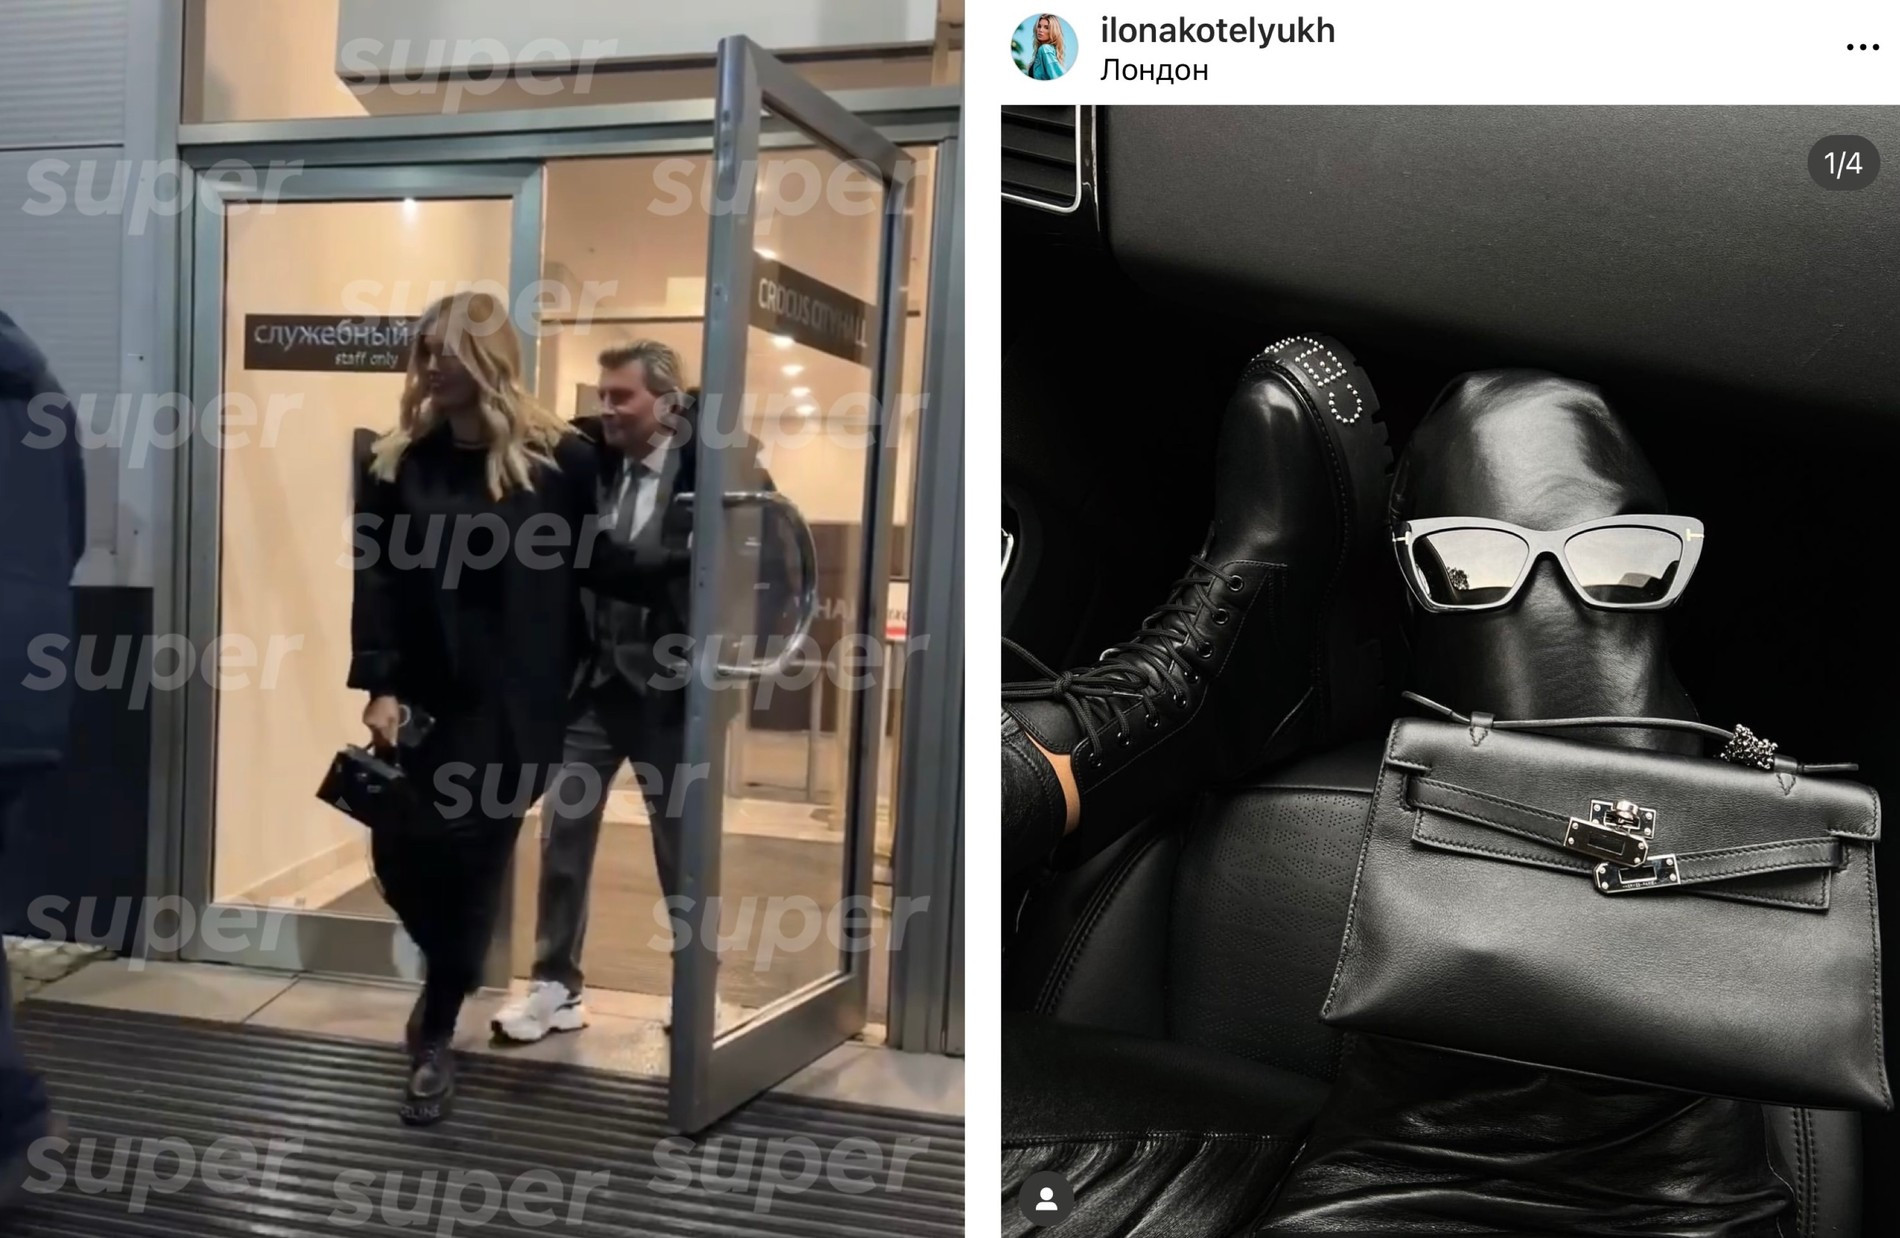 Обувь и сумка спутницы Баскова совпали с теми, что носит Илона Котелюх. Фото: Инстаграм (запрещен в РФ) девушки